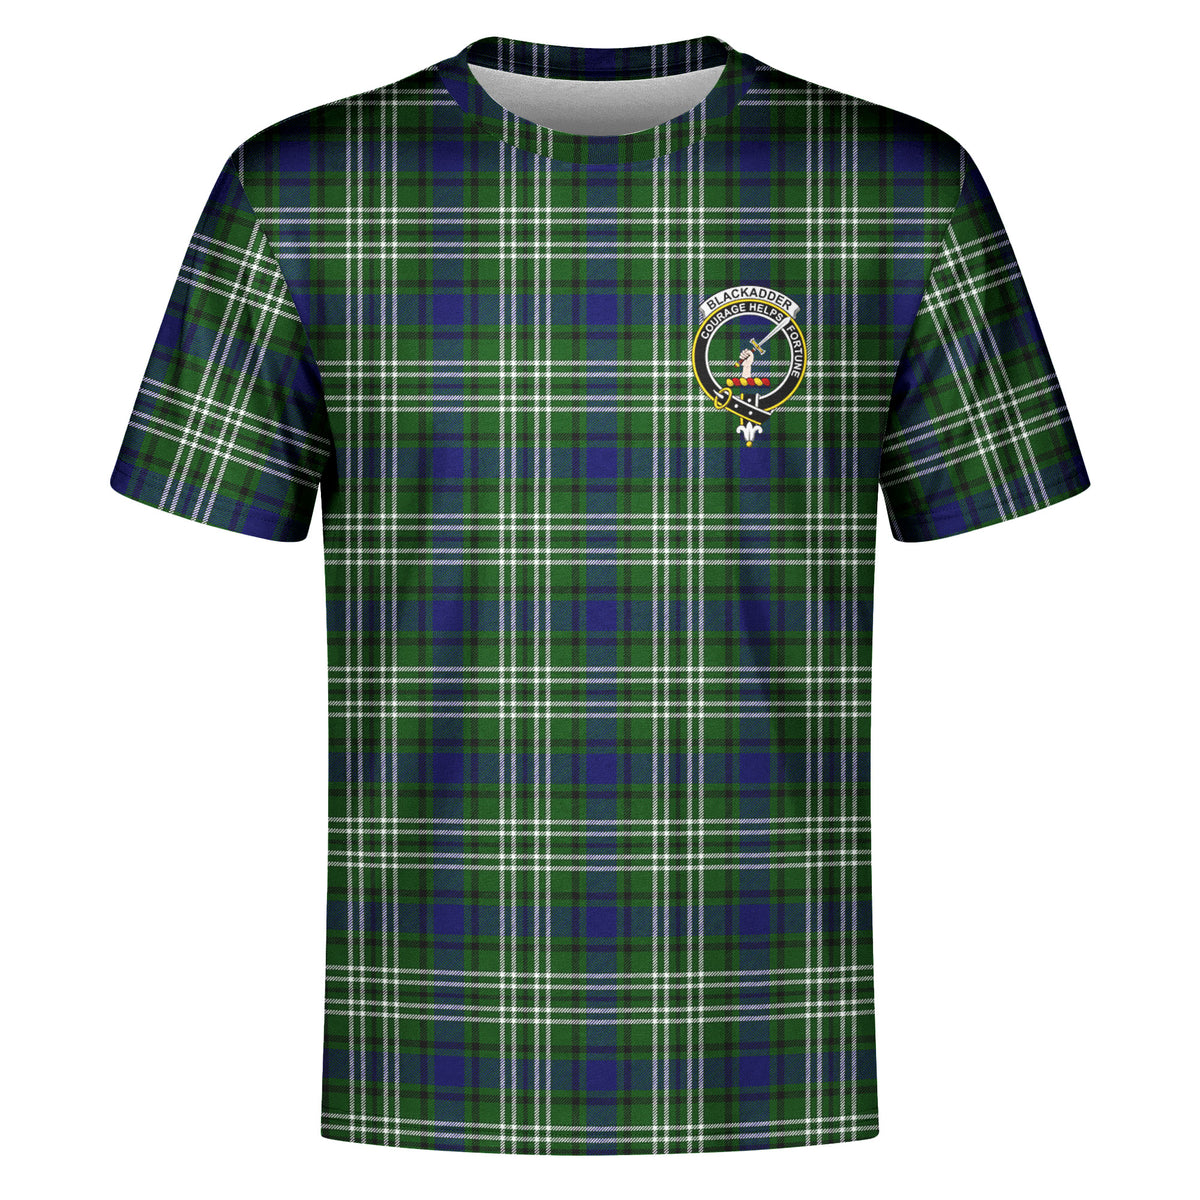 Blackadder Tartan Crest T-shirt